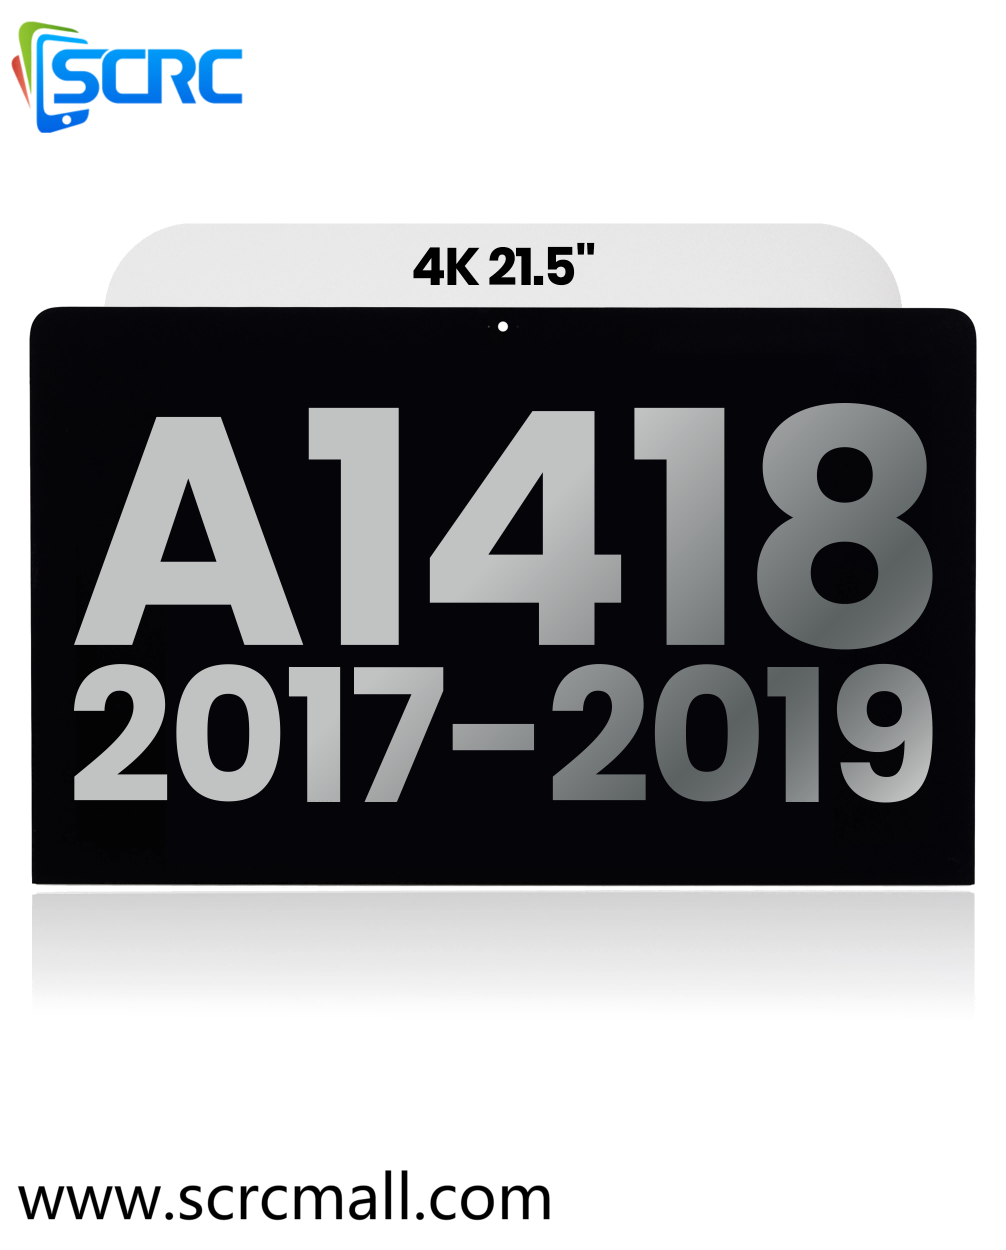 مجموعة شاشة LCD لـ iMac مقاس 21.5 بوصة 4K (A1418،2017-2019)